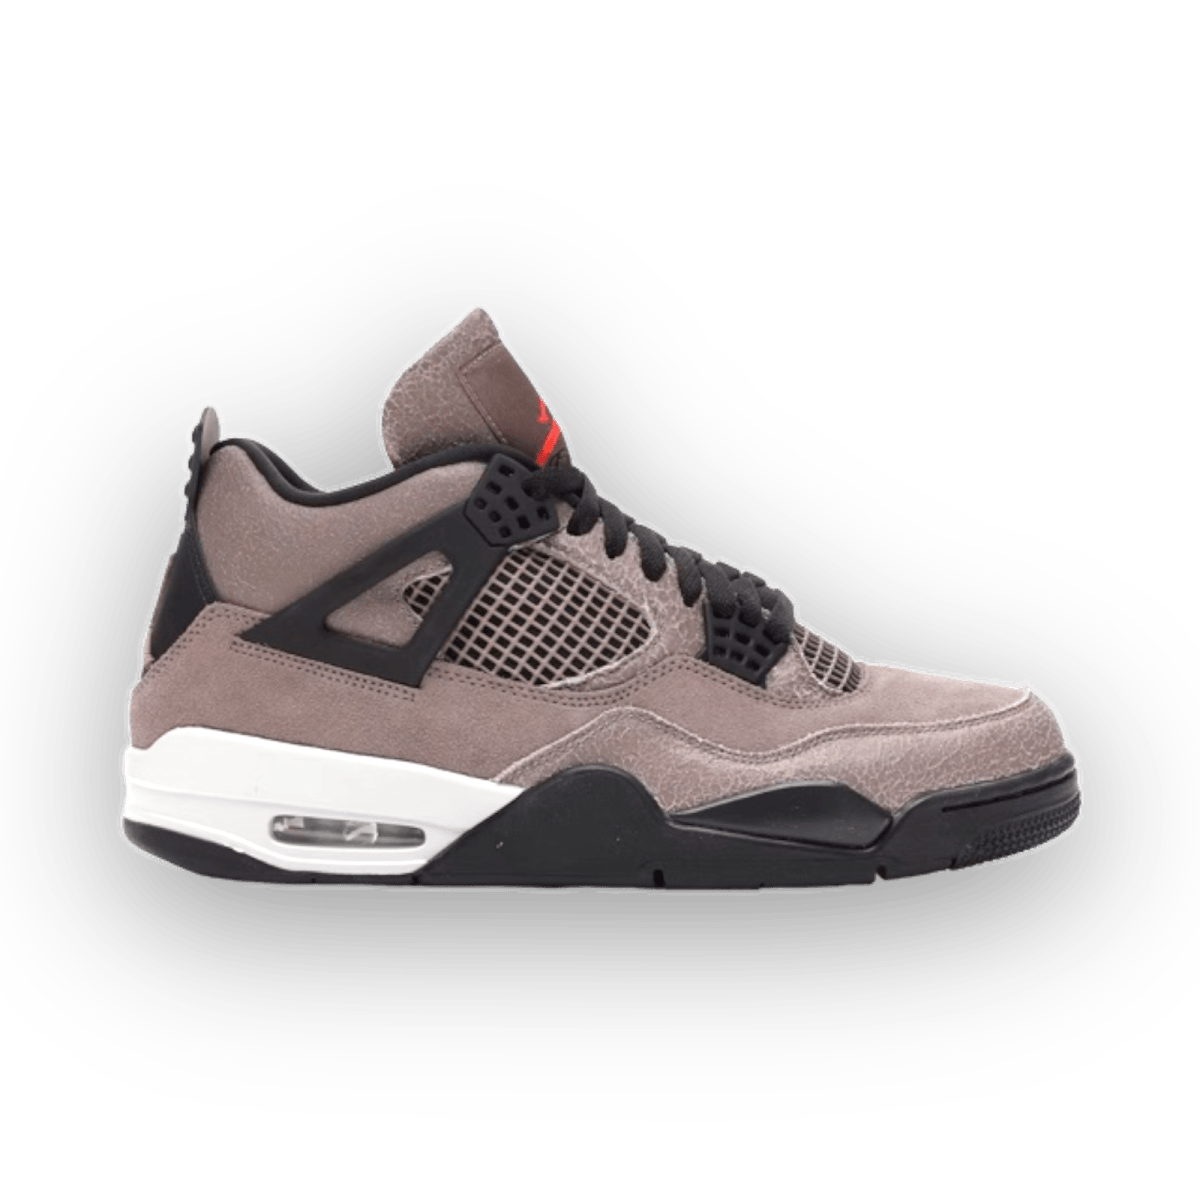 Jordan 4 Retro Taupe Haze - Grade School - Mid Sneaker - Jawns on Fire Sneakers & Streetwear